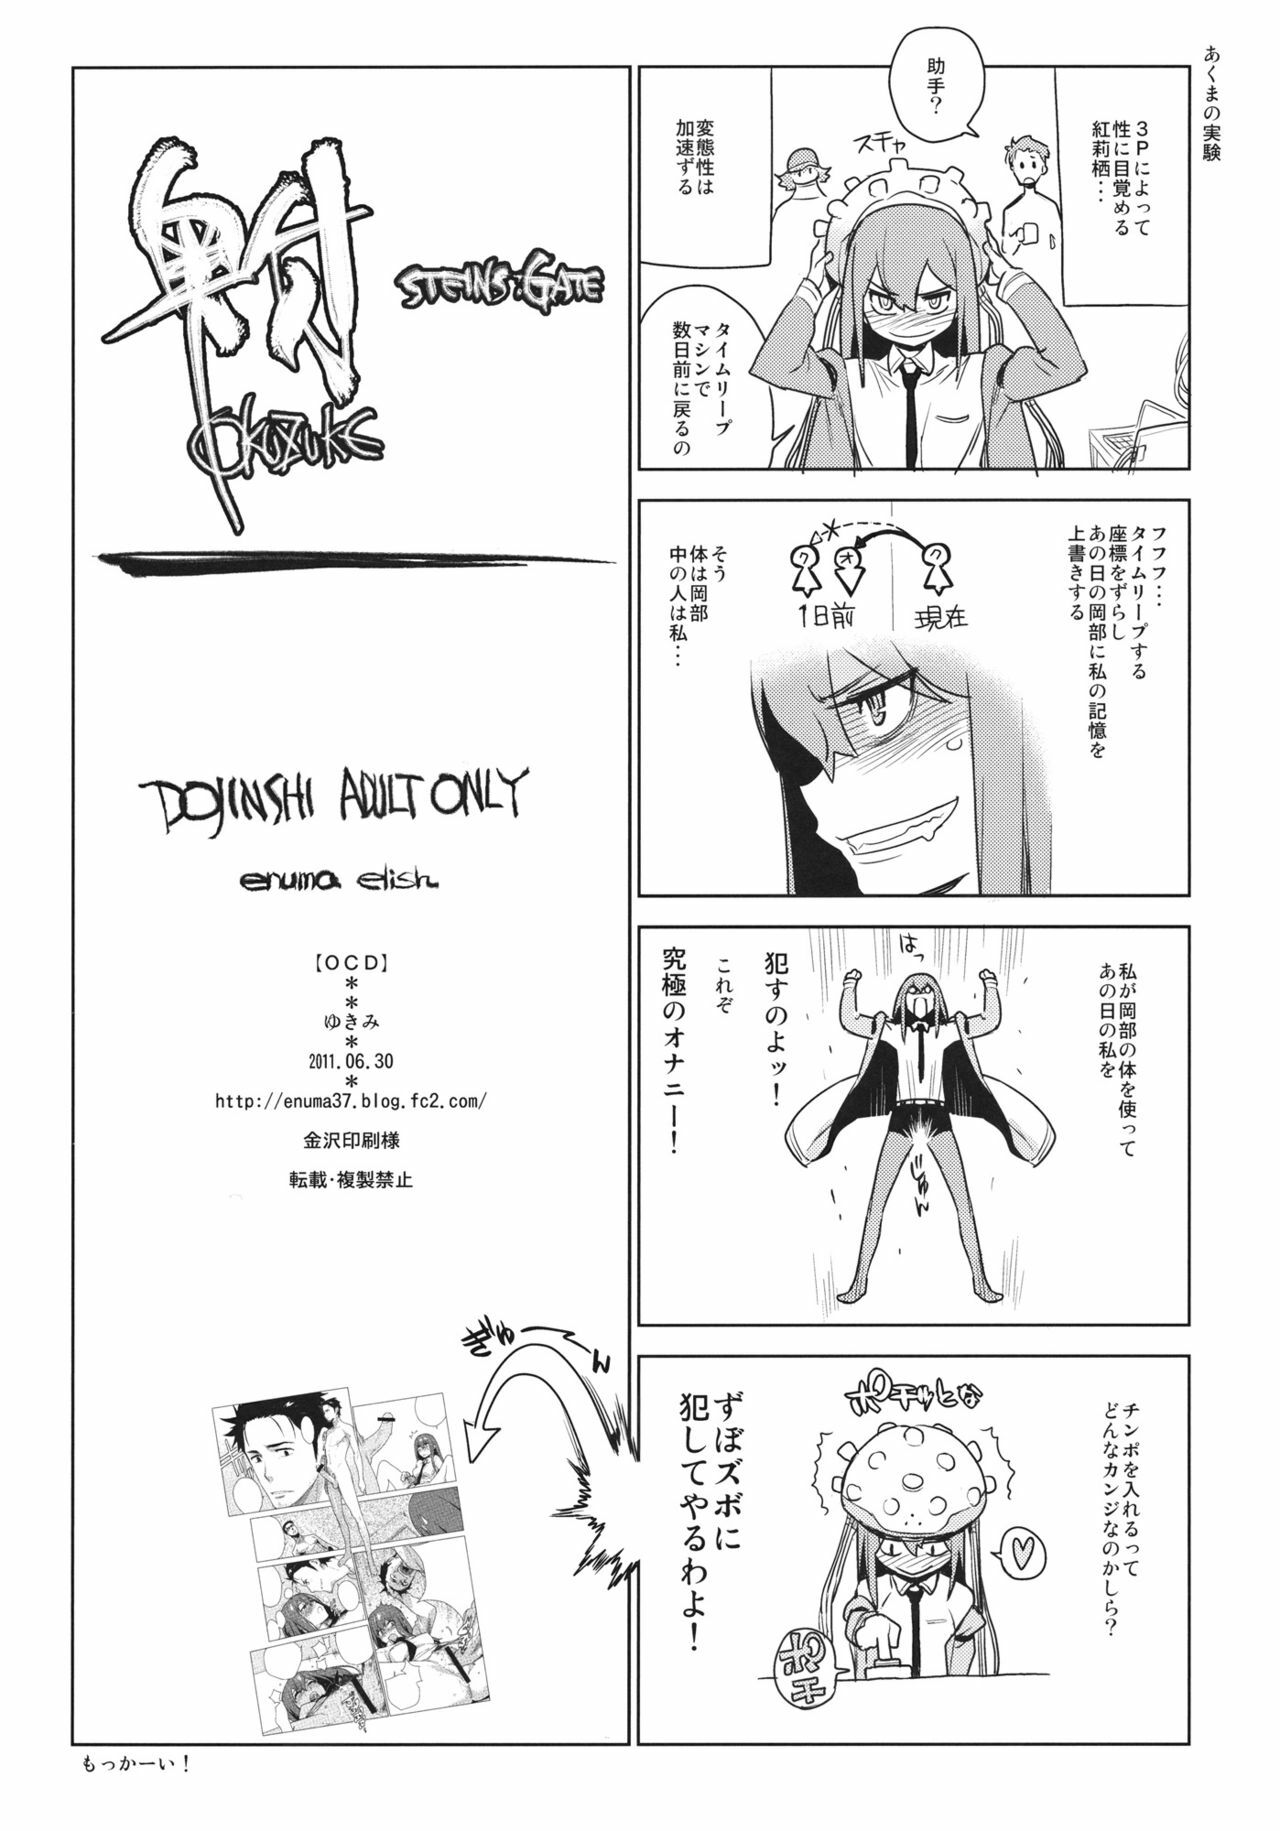 [enuma elish (Yukimi)] OCD (Steins;Gate) page 14 full